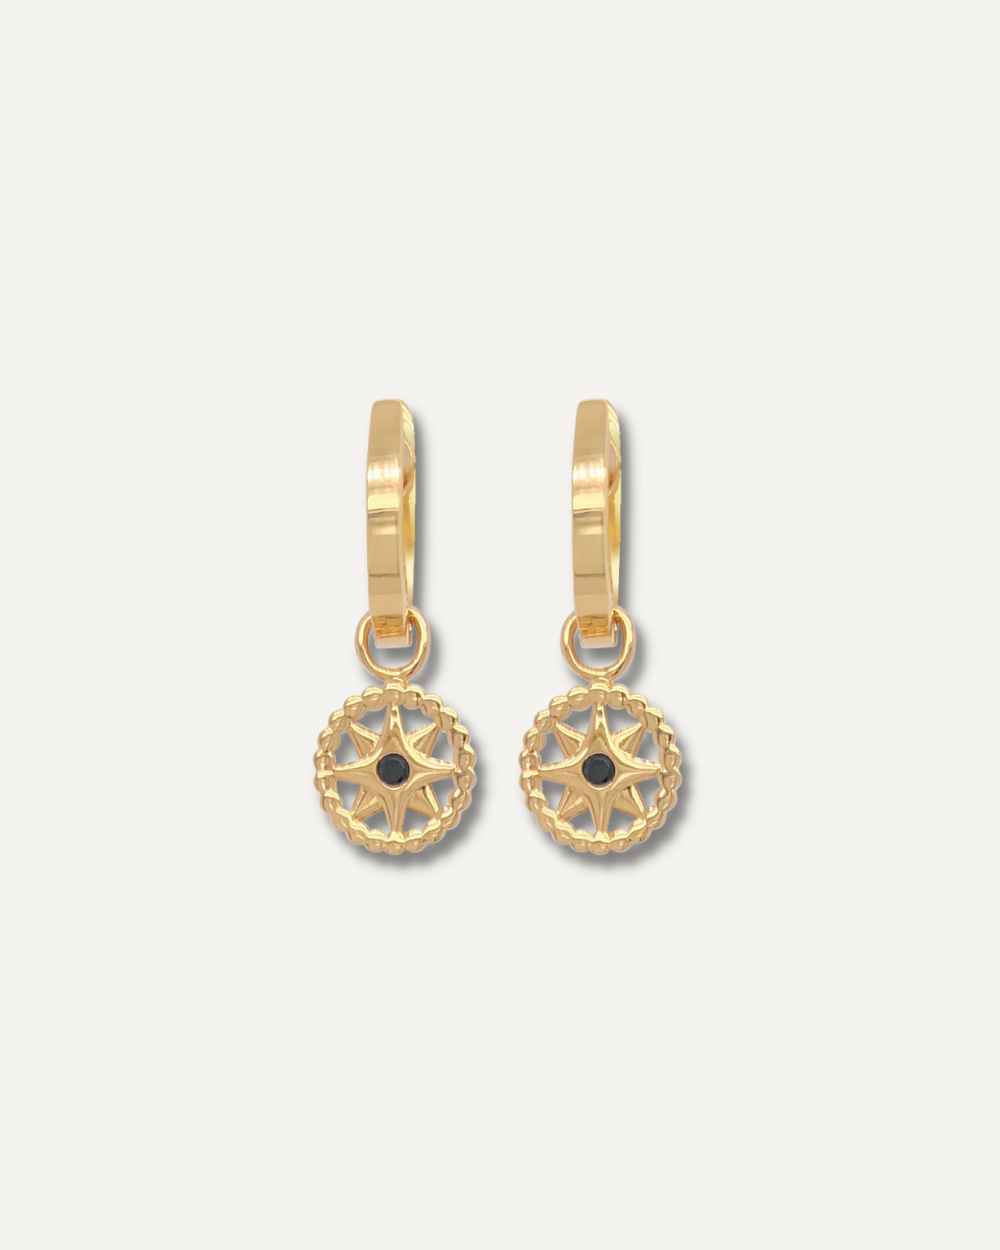 Hoop earrings with charm.